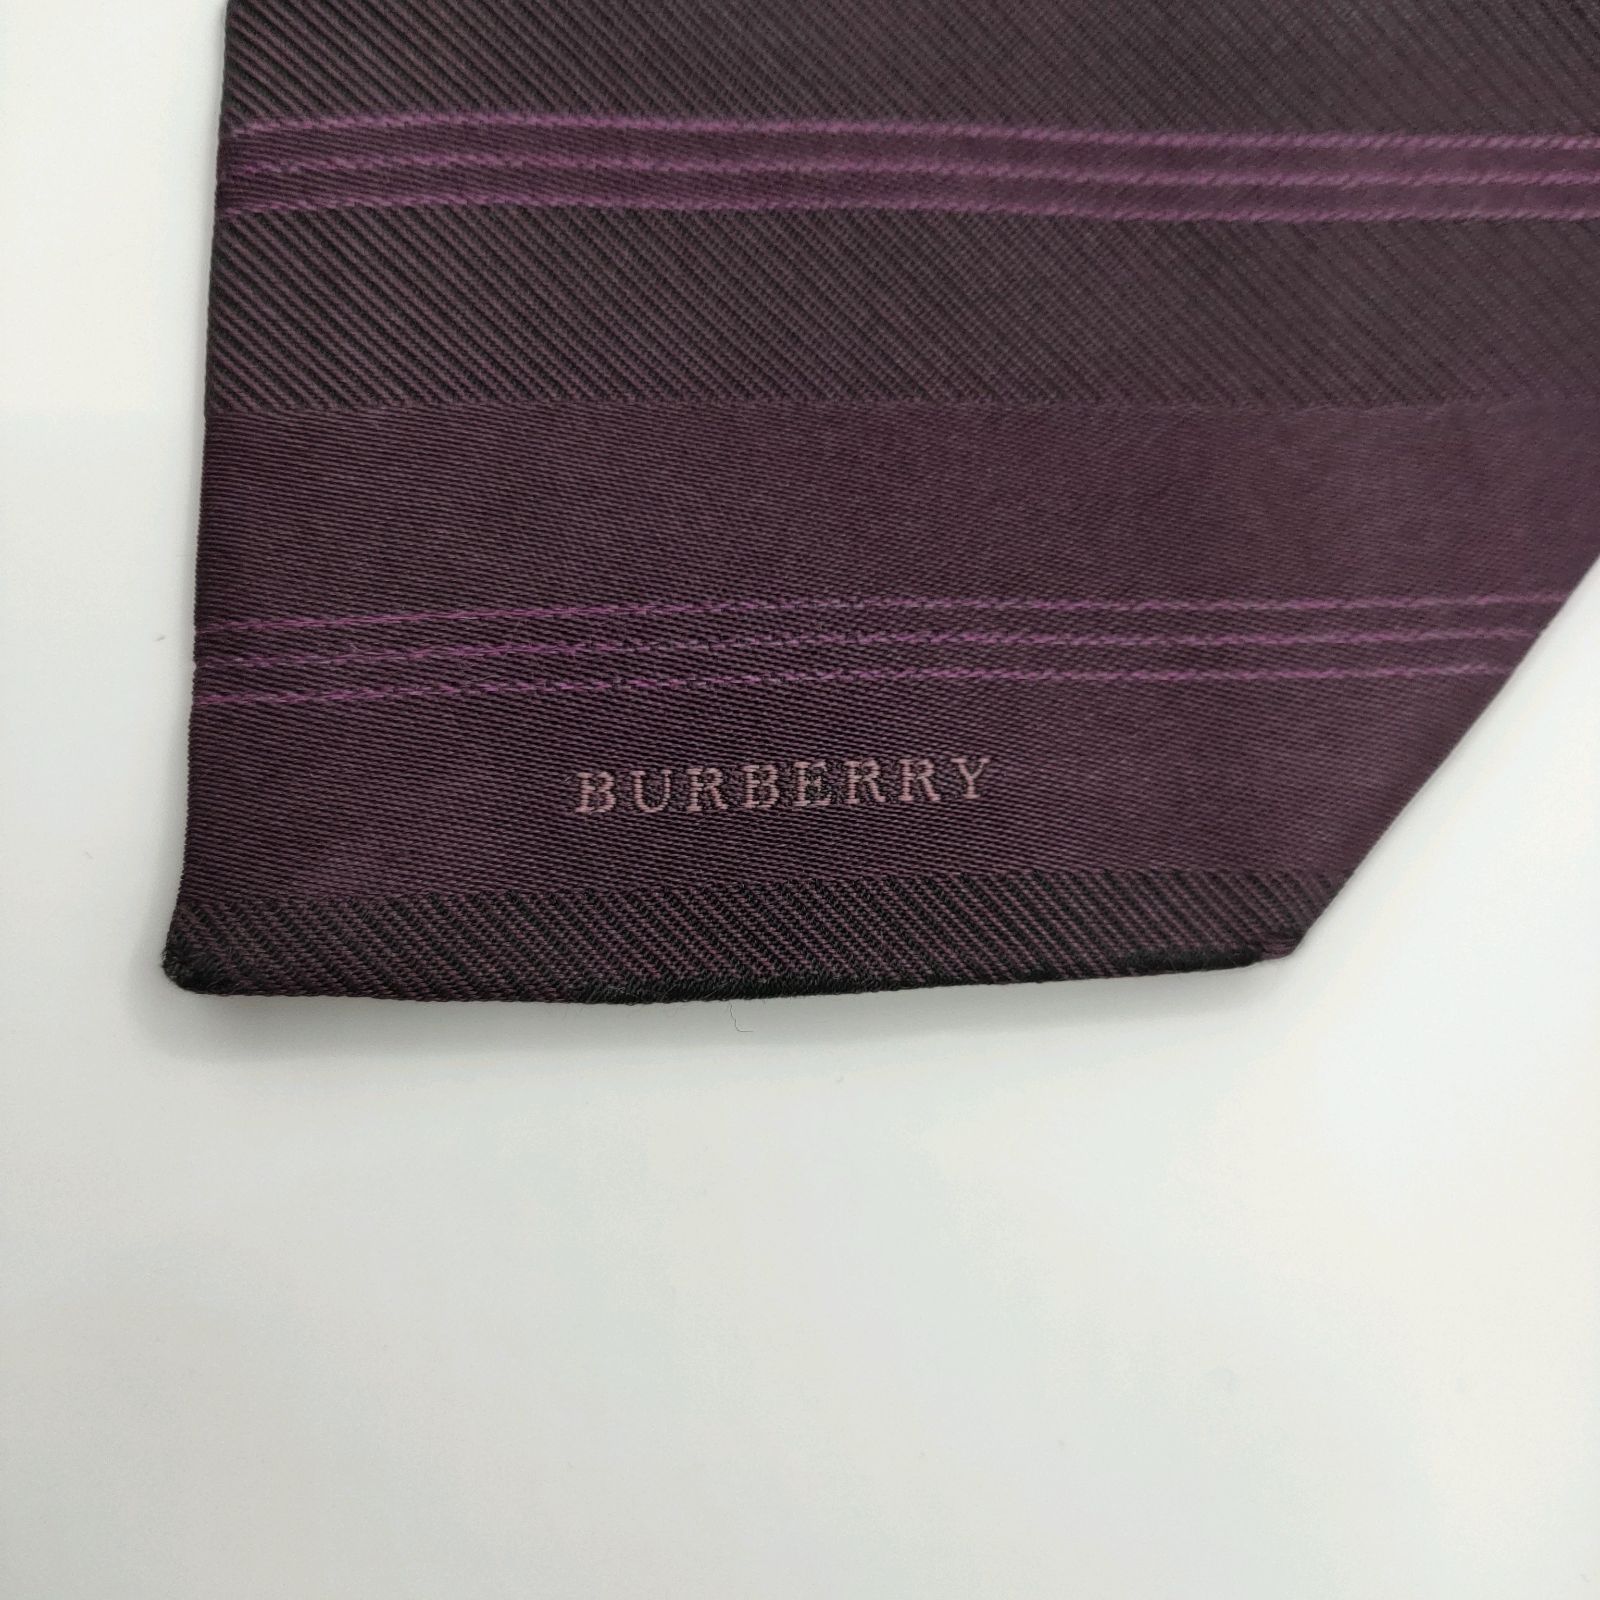 BURBERRY LONDON ネクタイ 高級 シルク100% ビジネス ネクタイ 